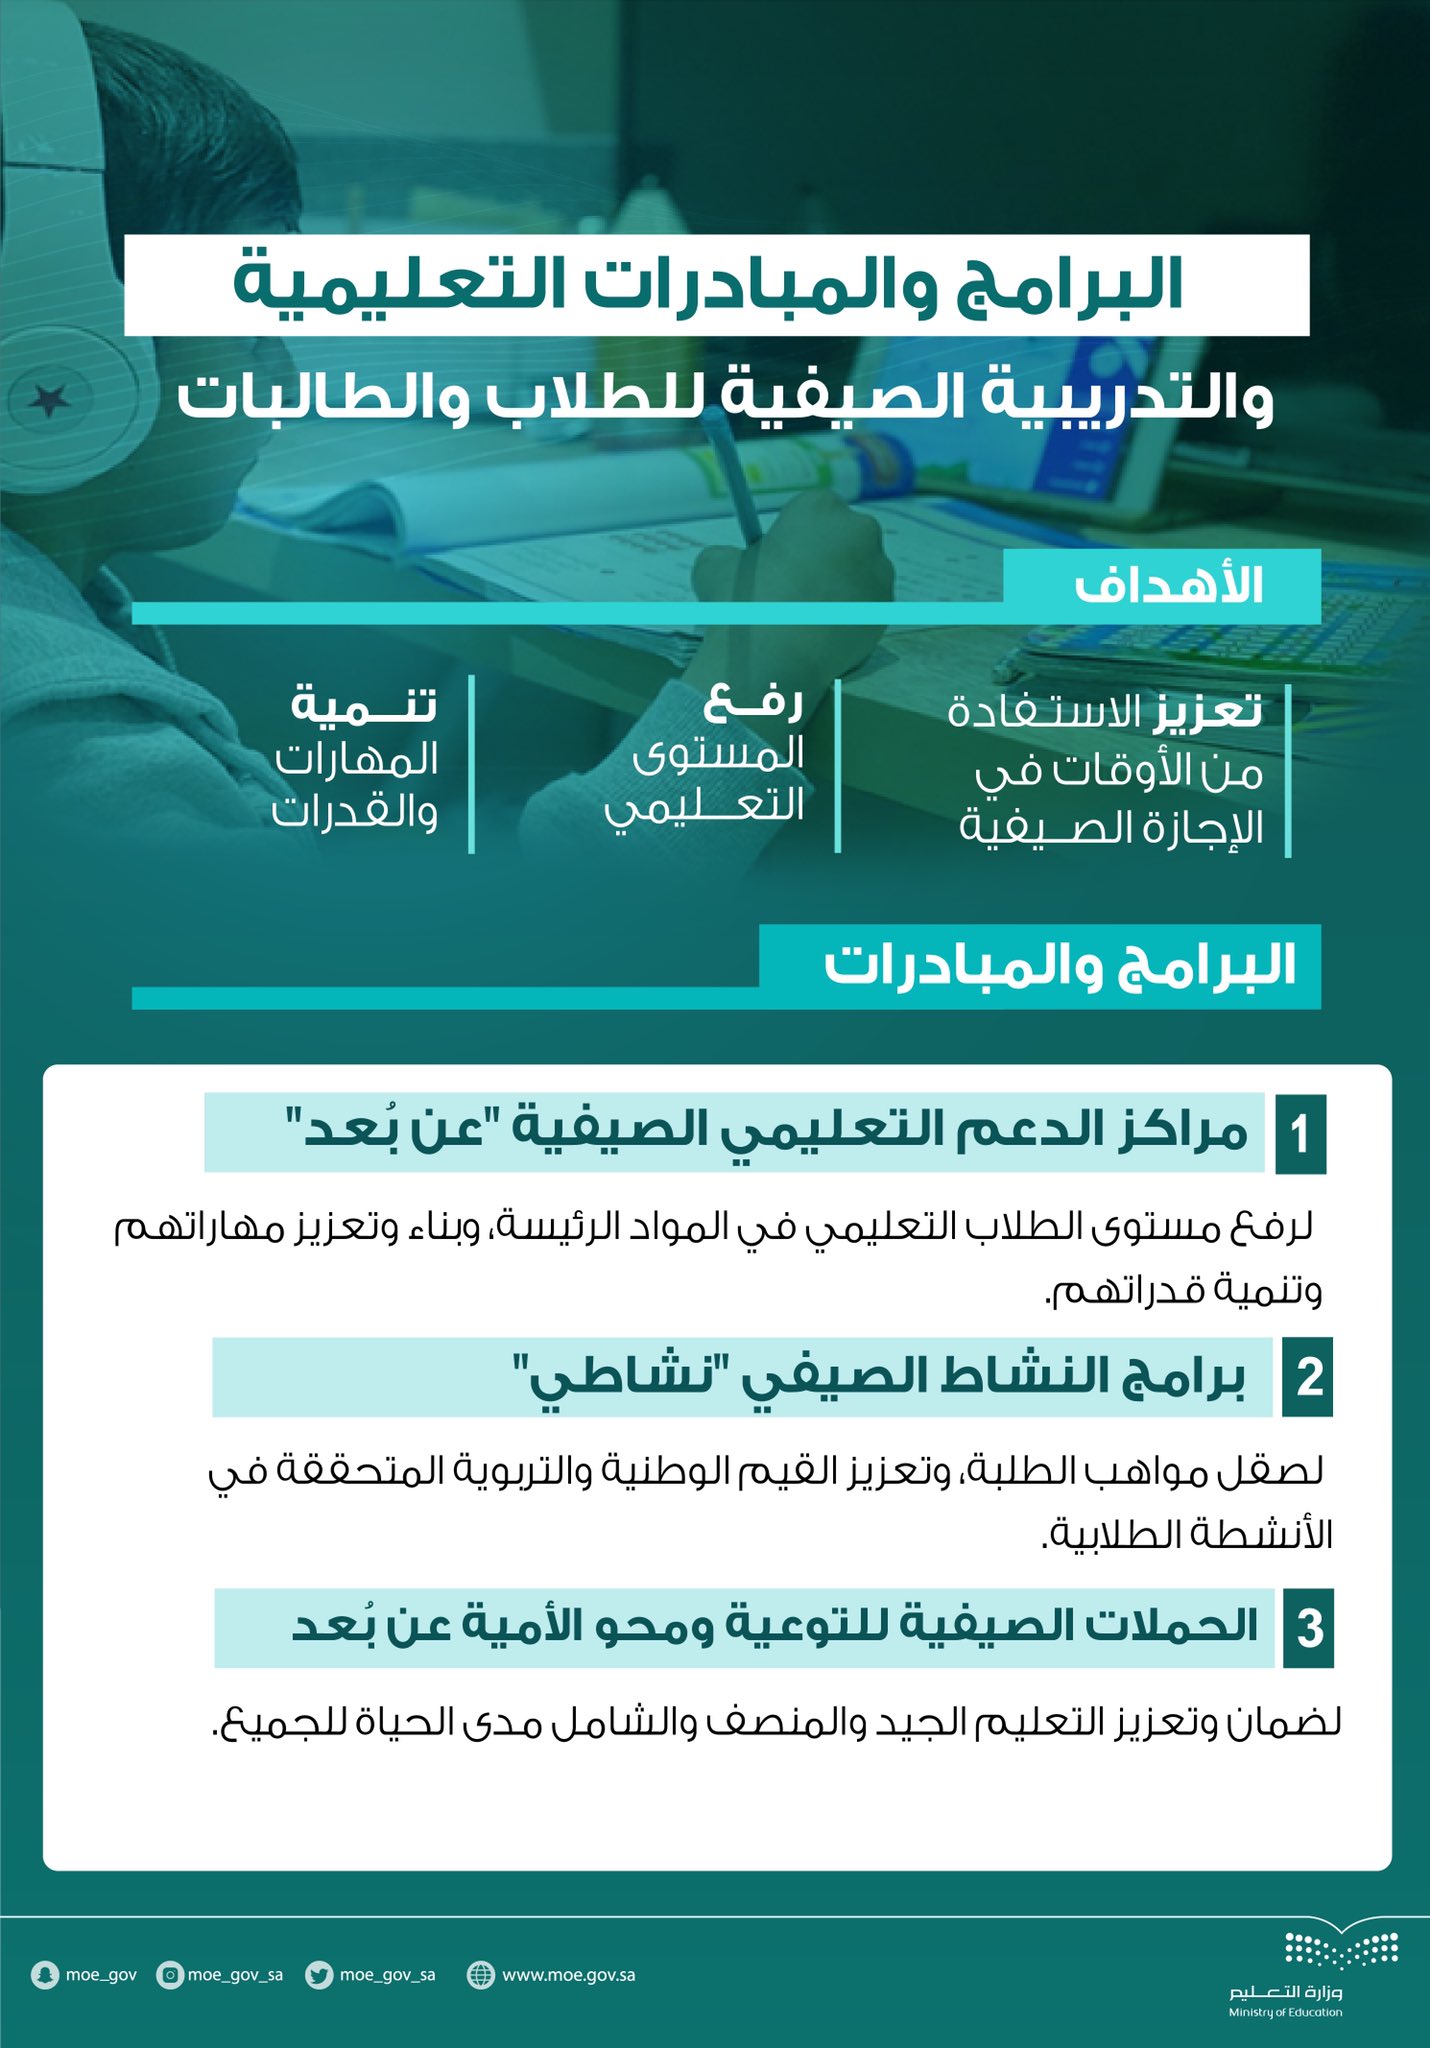 البرامج والمبادرات التعليمية والتدريبية في المملكة العربية السعودية